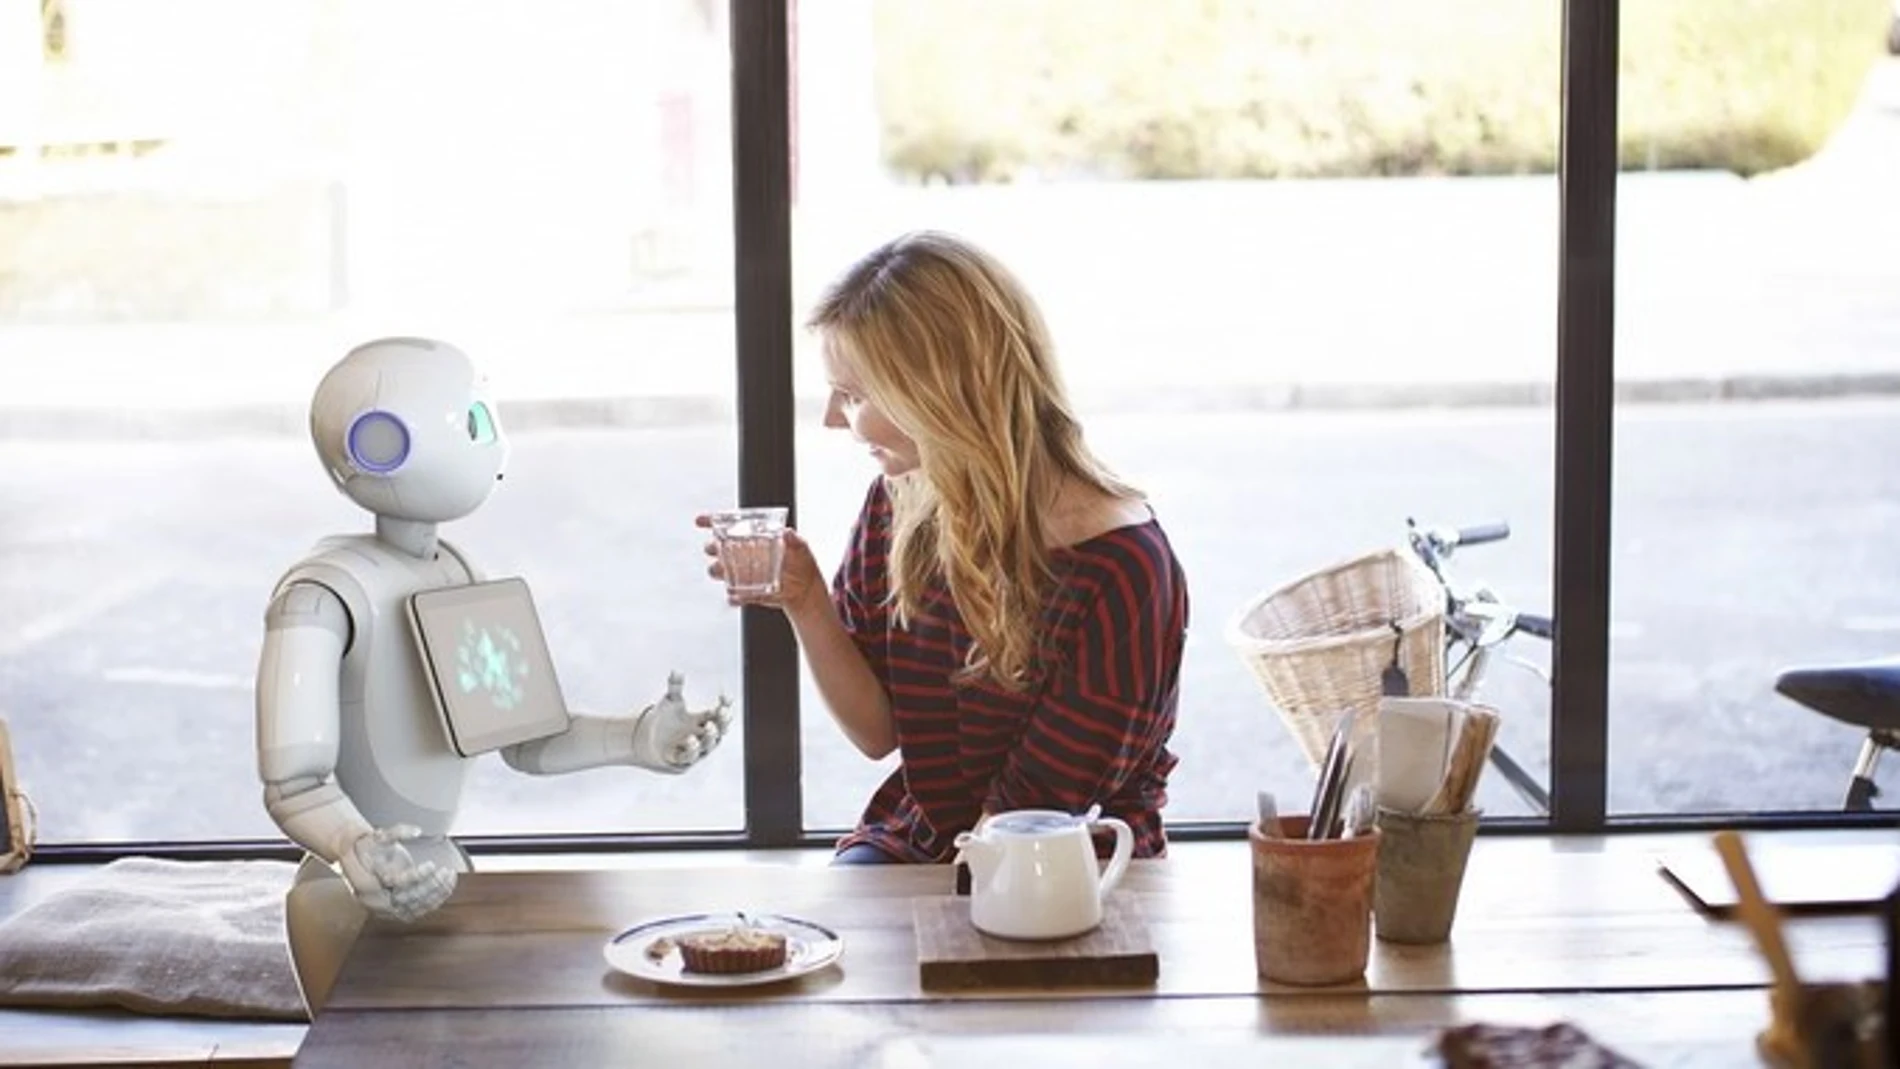 Fotografía facilitada por SoftBank Robotics, de una mujer conversando con un robots